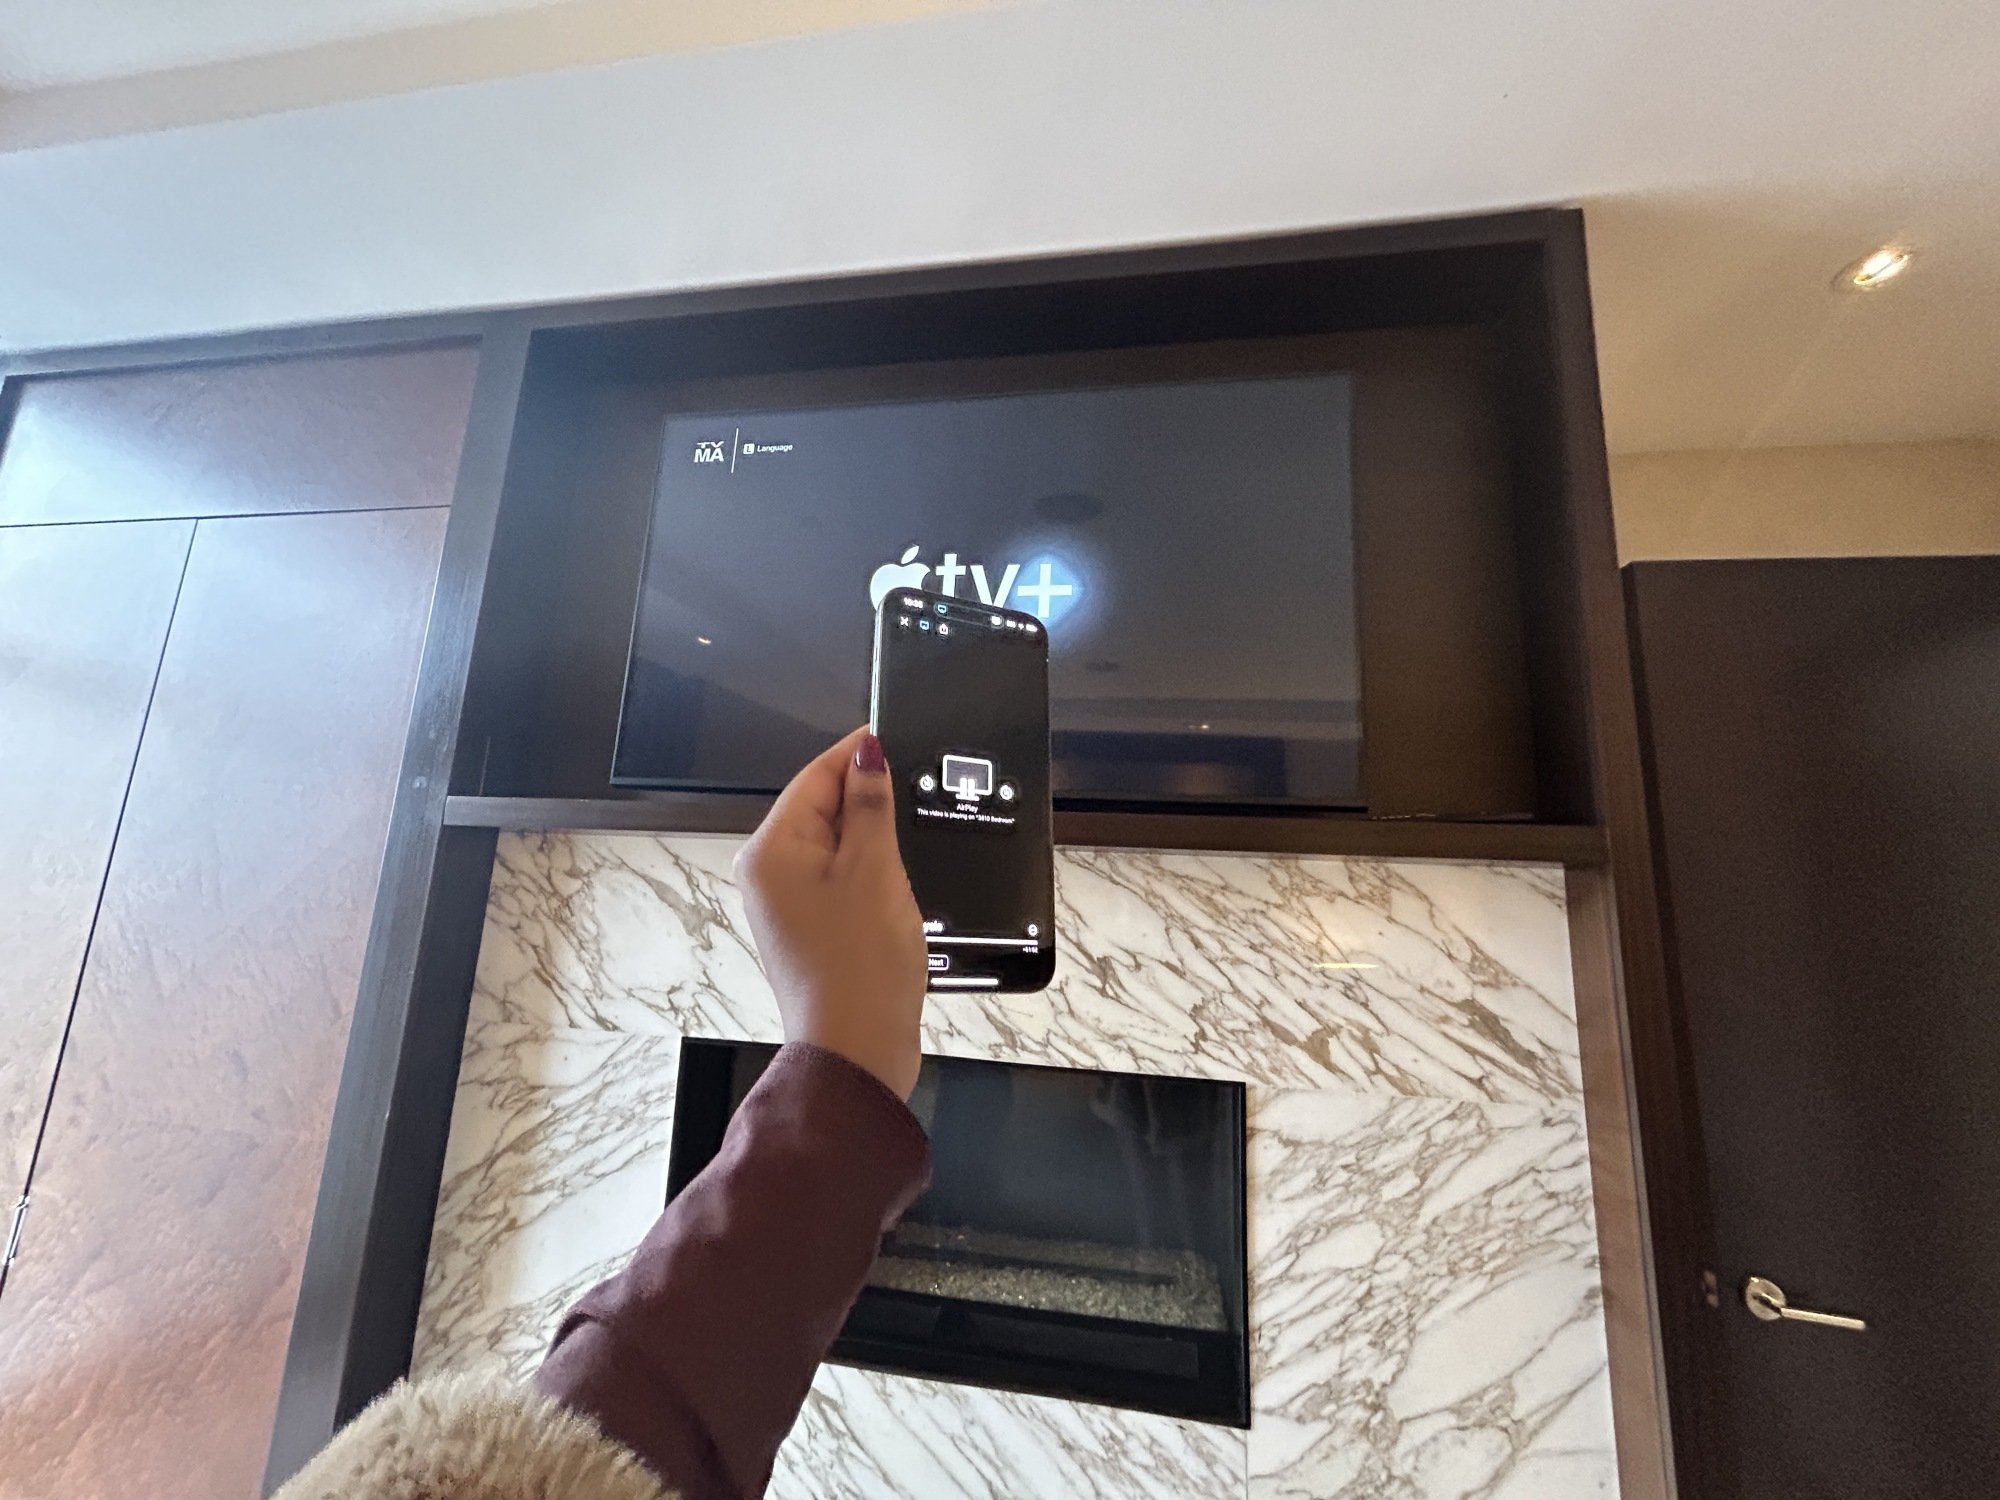 Apple TV+ via AirPlay at IHG hotel